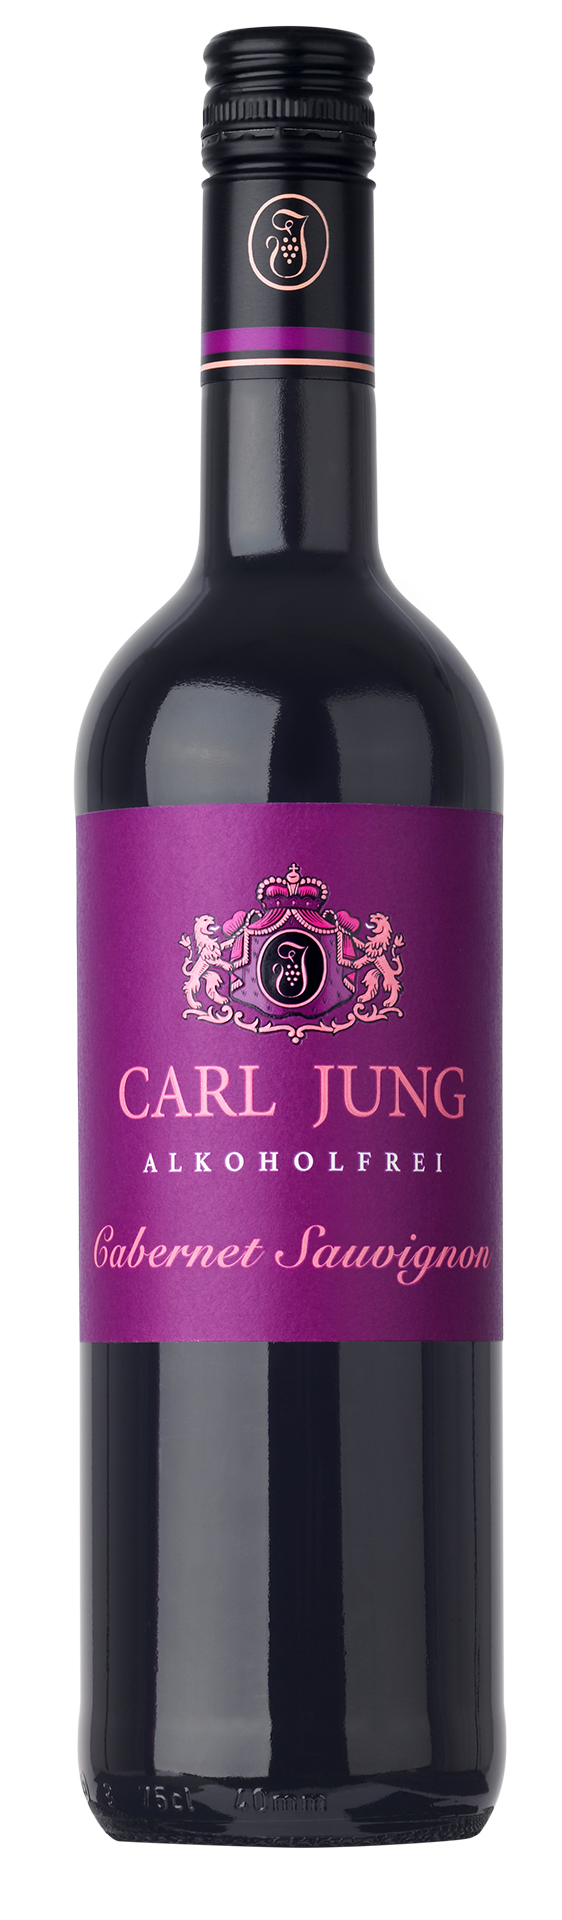 Carl Jung Cabernet Sauvignon 0,75l - alkoholfreier Rotwein